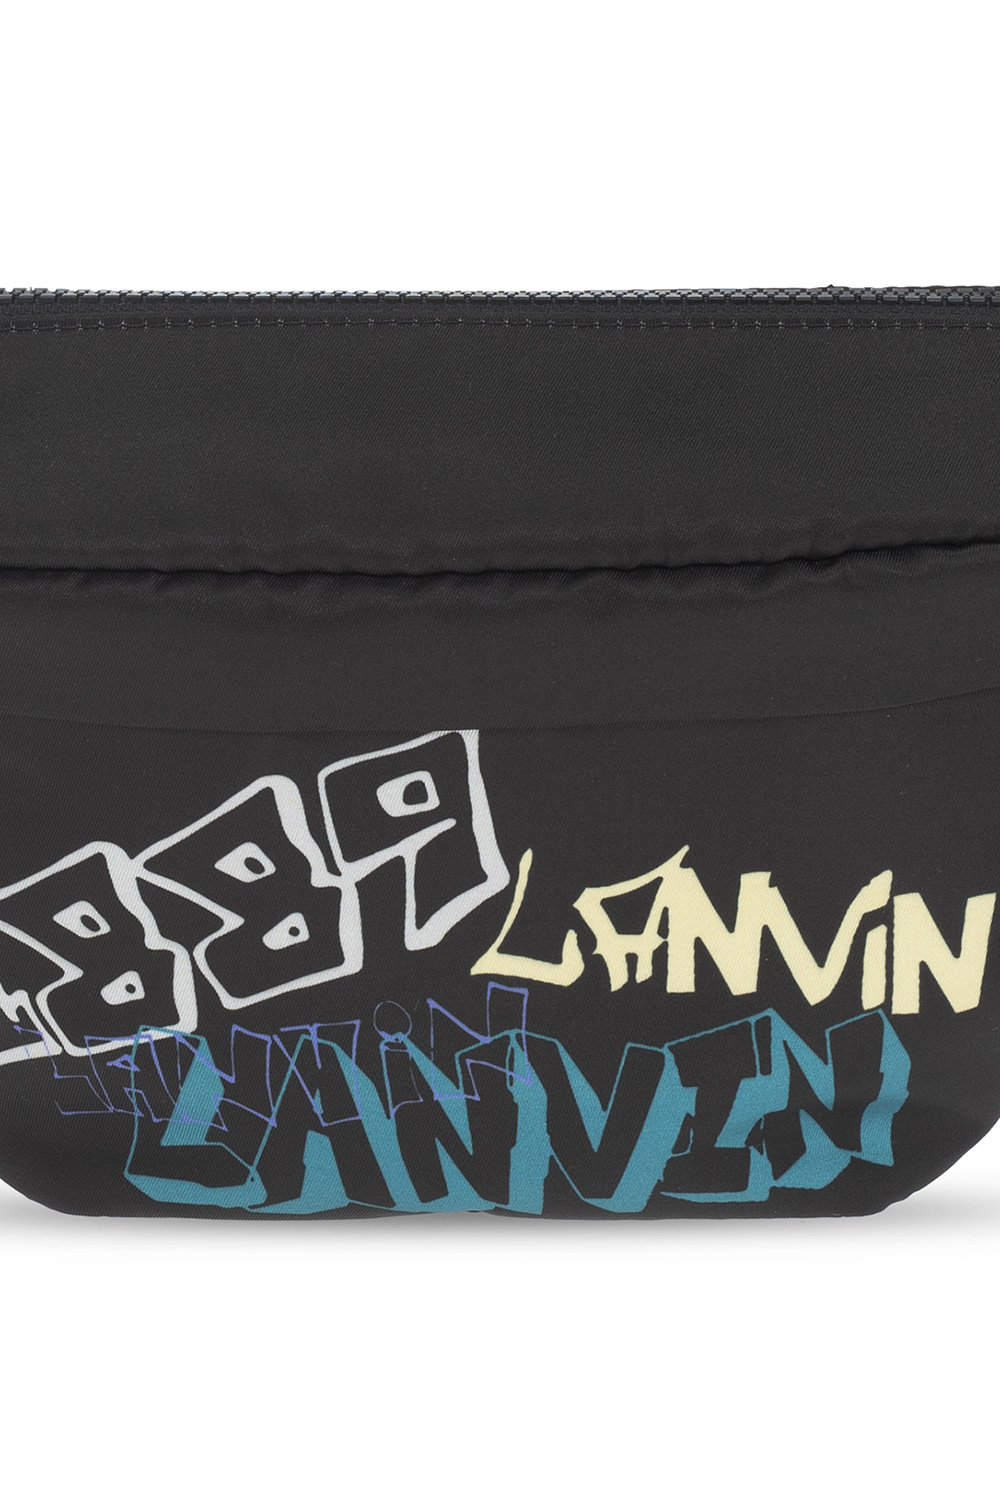 Lanvin Belt bag